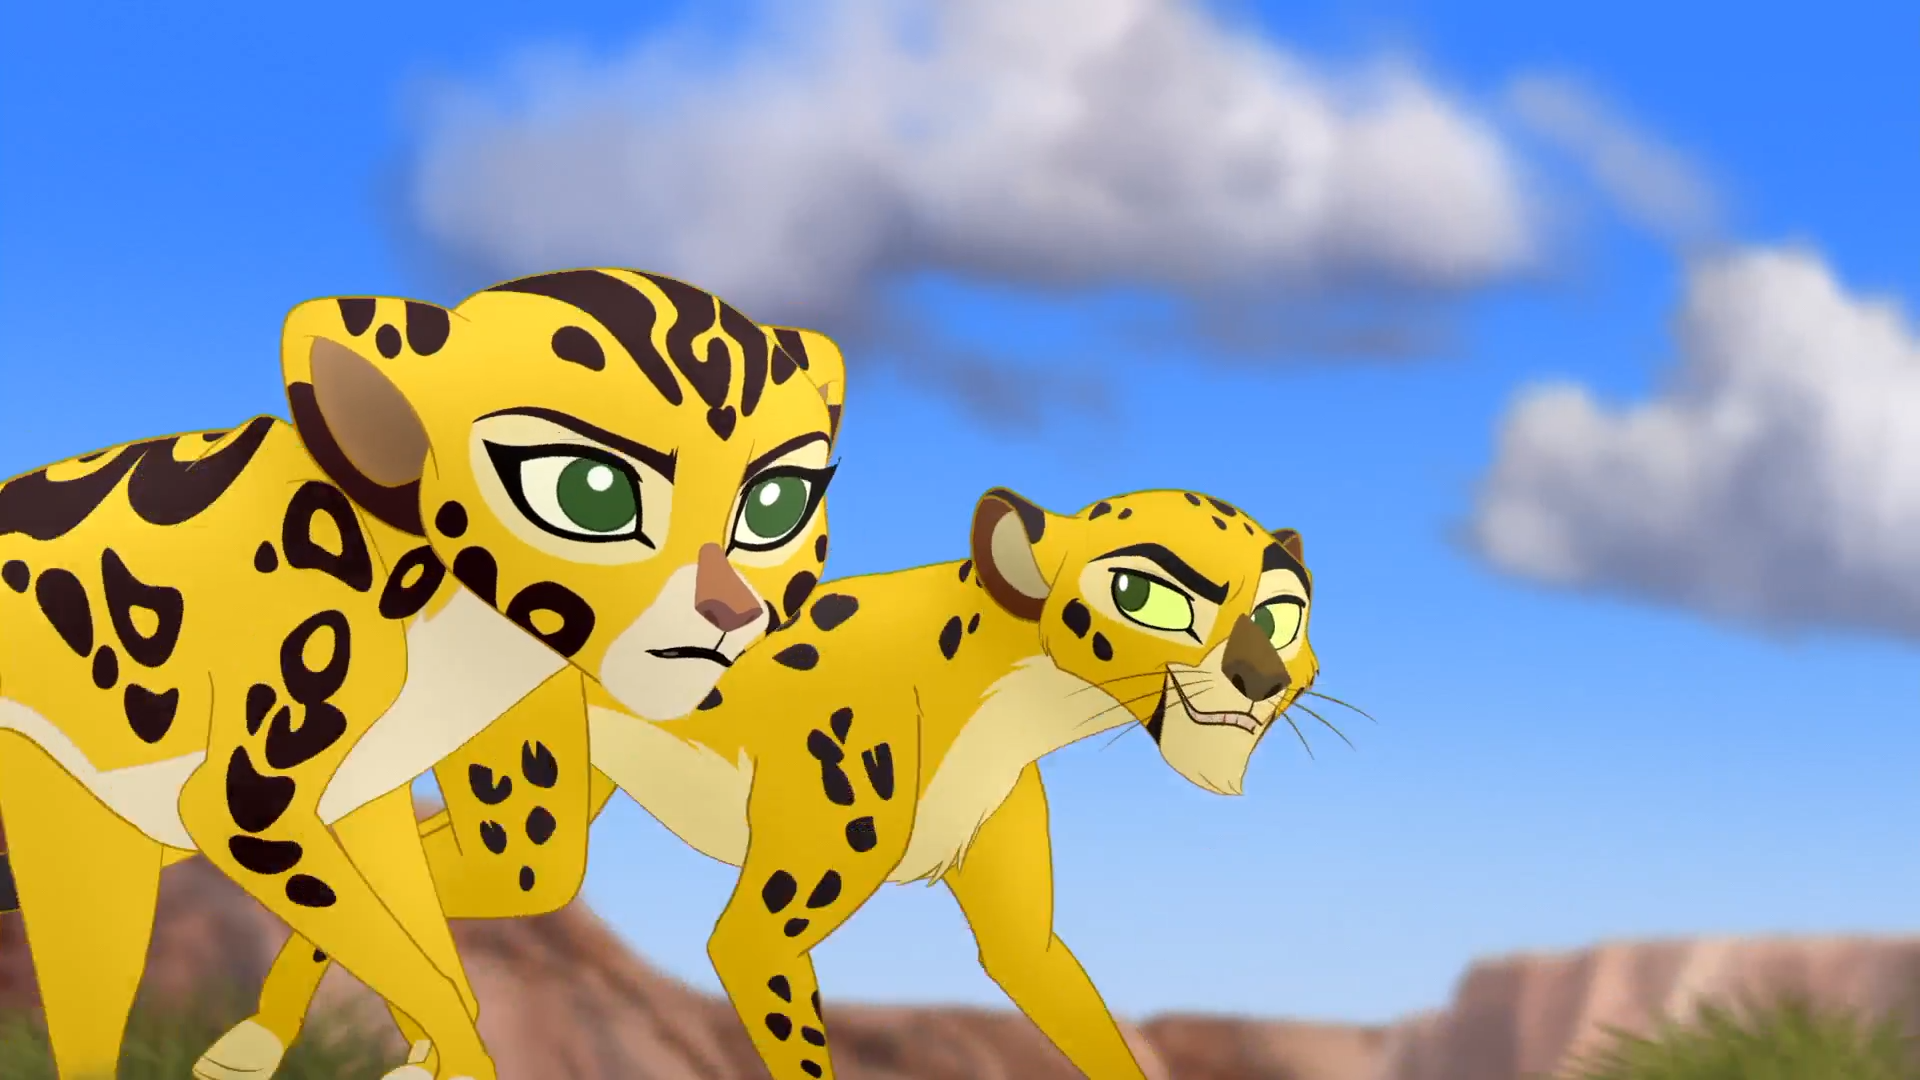 lion king 4 cheetah adventure